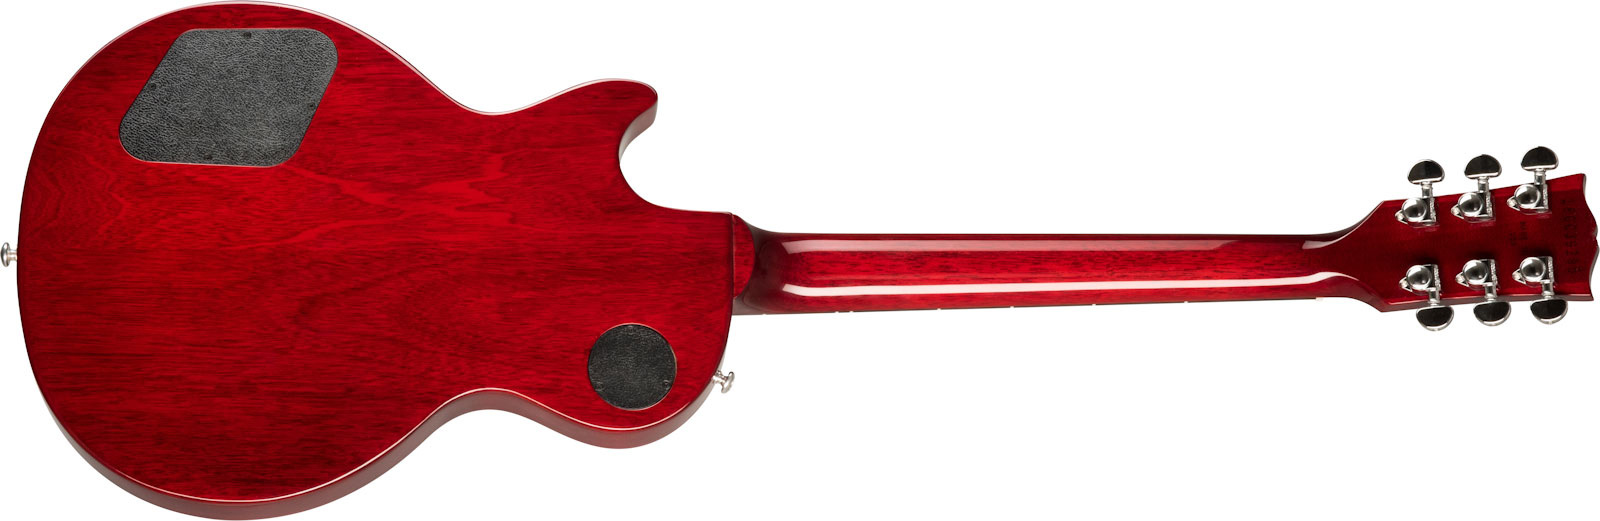 Gibson Les Paul Studio Modern 2020 Lh Gaucher 2h Ht Rw - Wine Red - Linkshandige elektrische gitaar - Variation 1